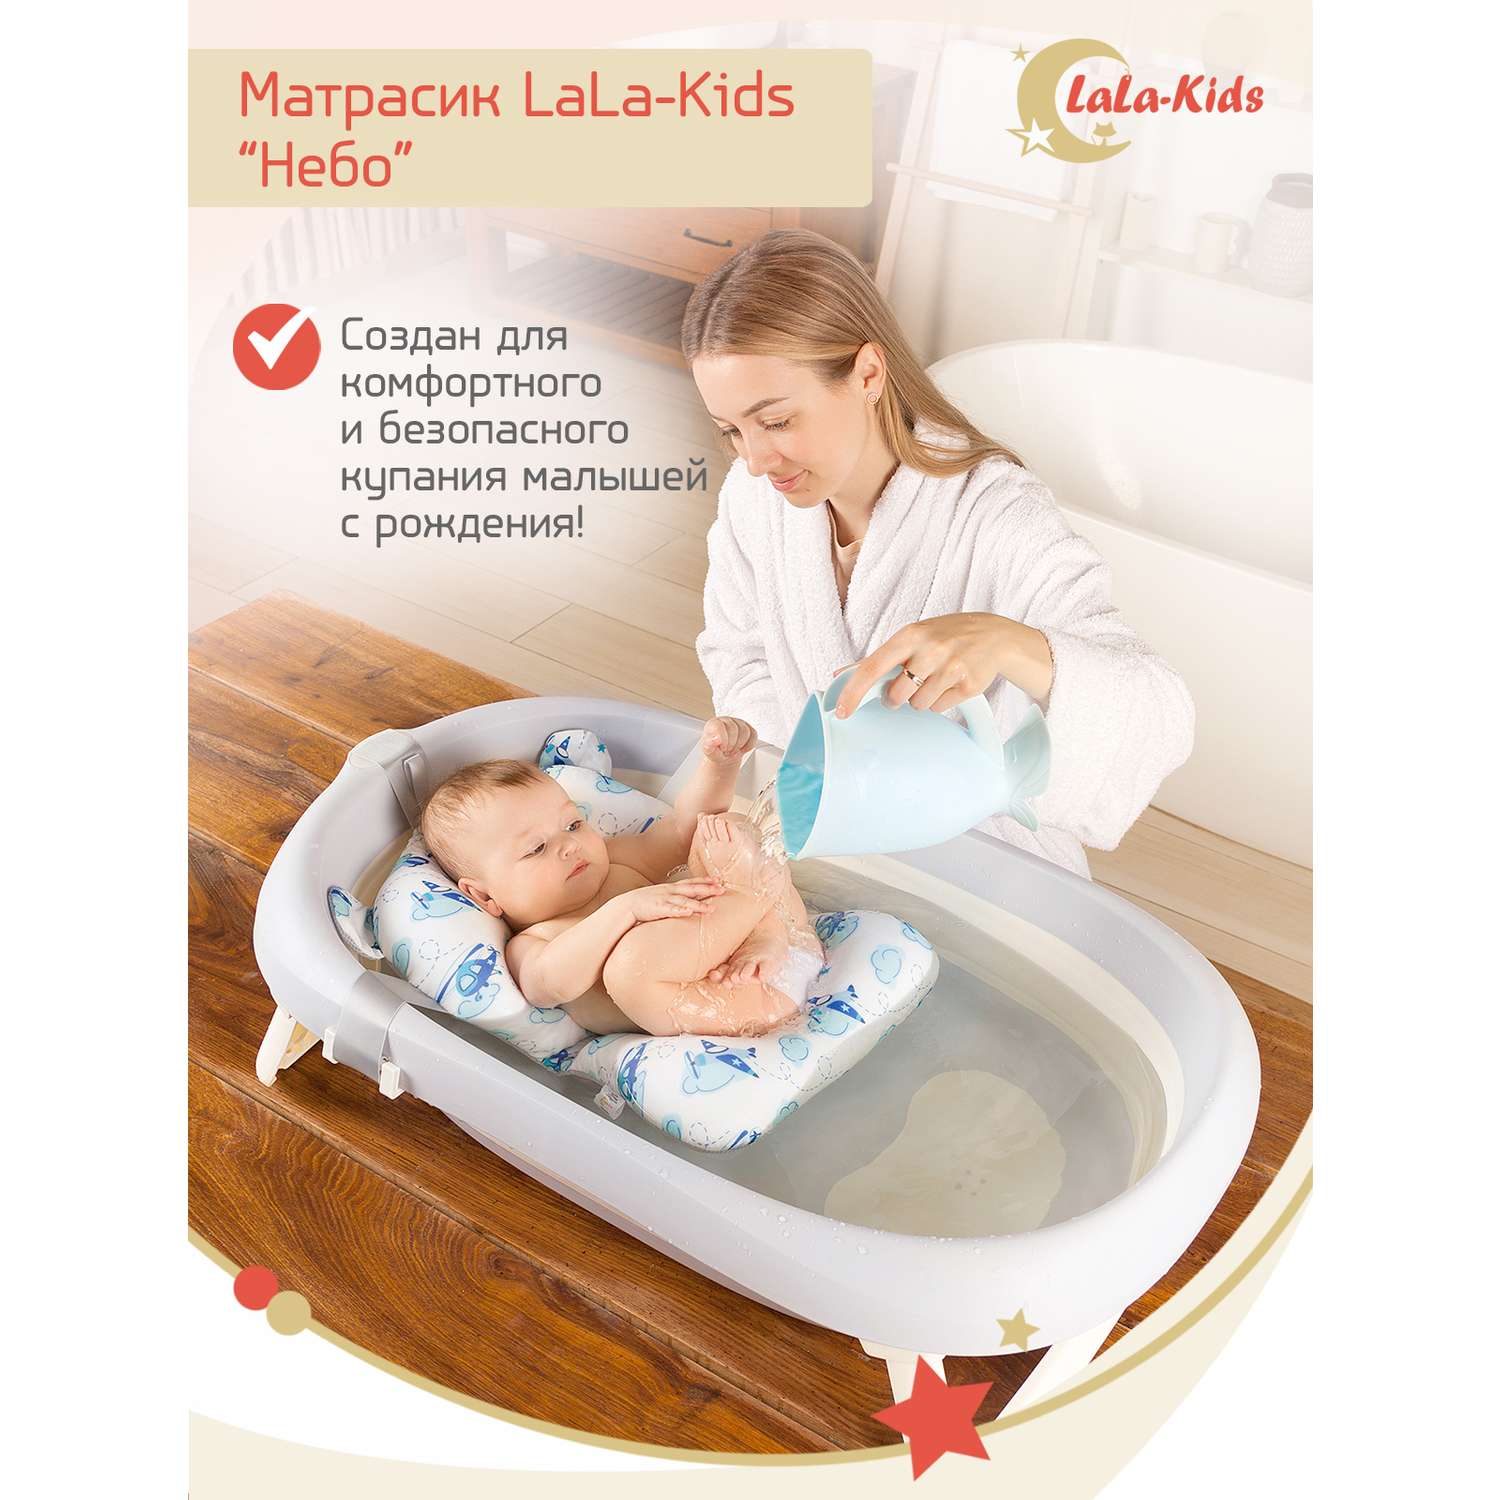 Складная ванночка LaLa-Kids для купания новорожденных с матрасиком в комплекте - фото 2